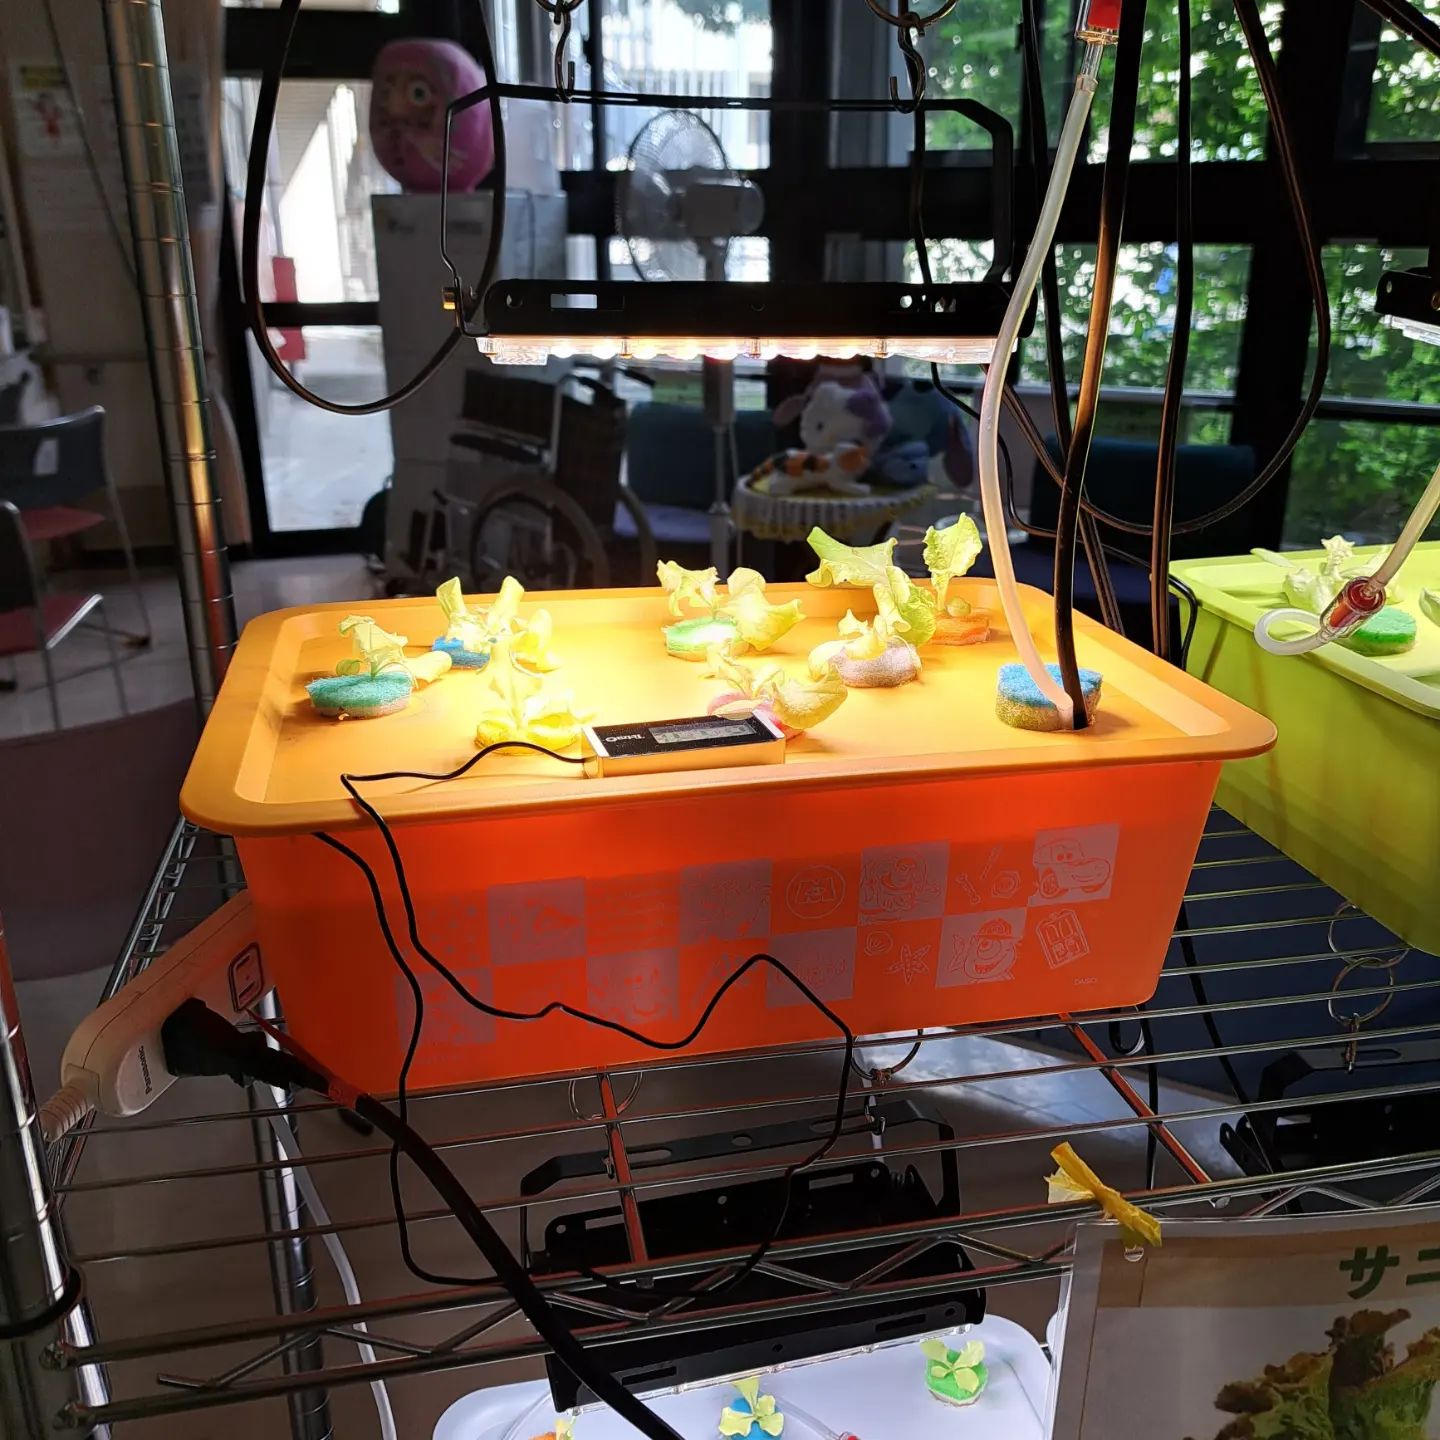 レタス水耕栽培通信6　すくすく育っております。サニーレタス紹介ボードを作りました。#ウエルハイムヨコゼ 　#横瀬デイサービスセンター 　#横瀬デイコラボ企画 　#横瀬町 　#秩父 　#レタス水耕栽培